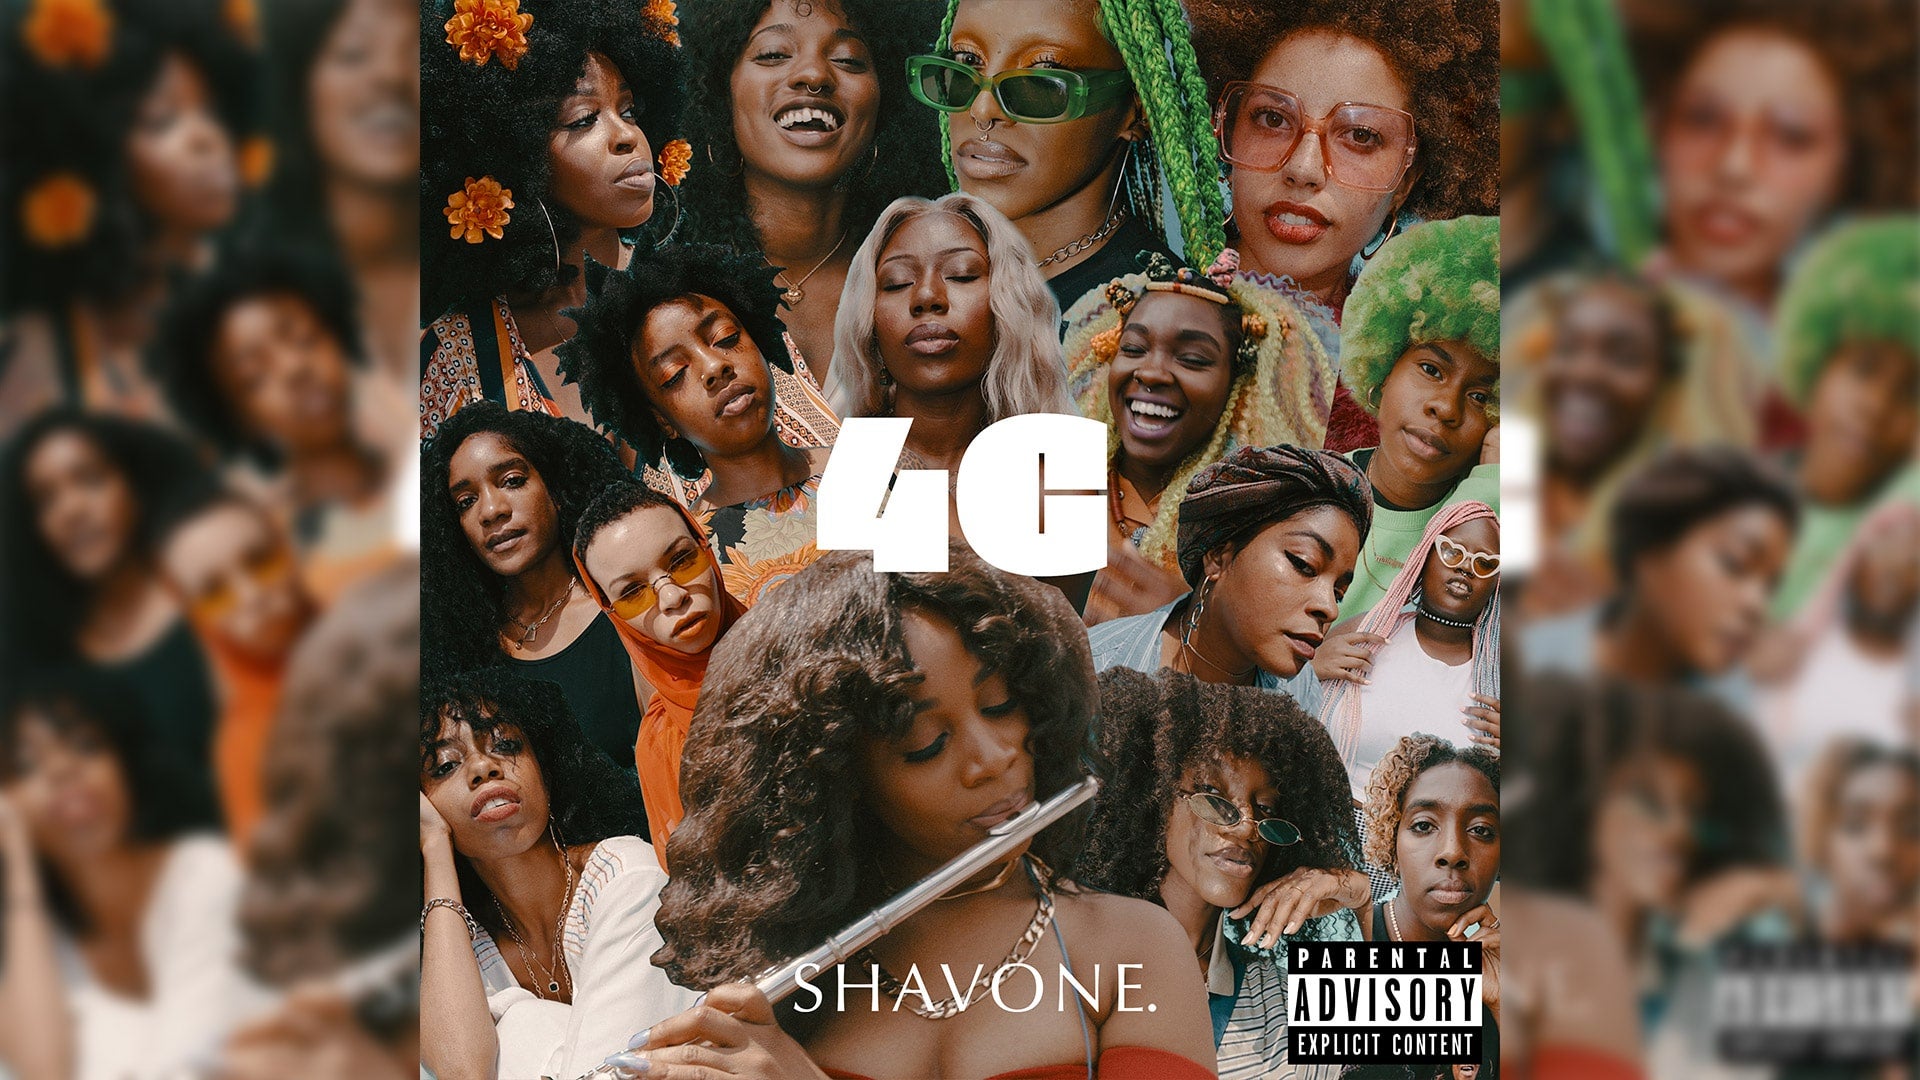 SHAVONE.’s “4C” Celebrates & Sheds Light On The Depths Of #BlackGirlMagic